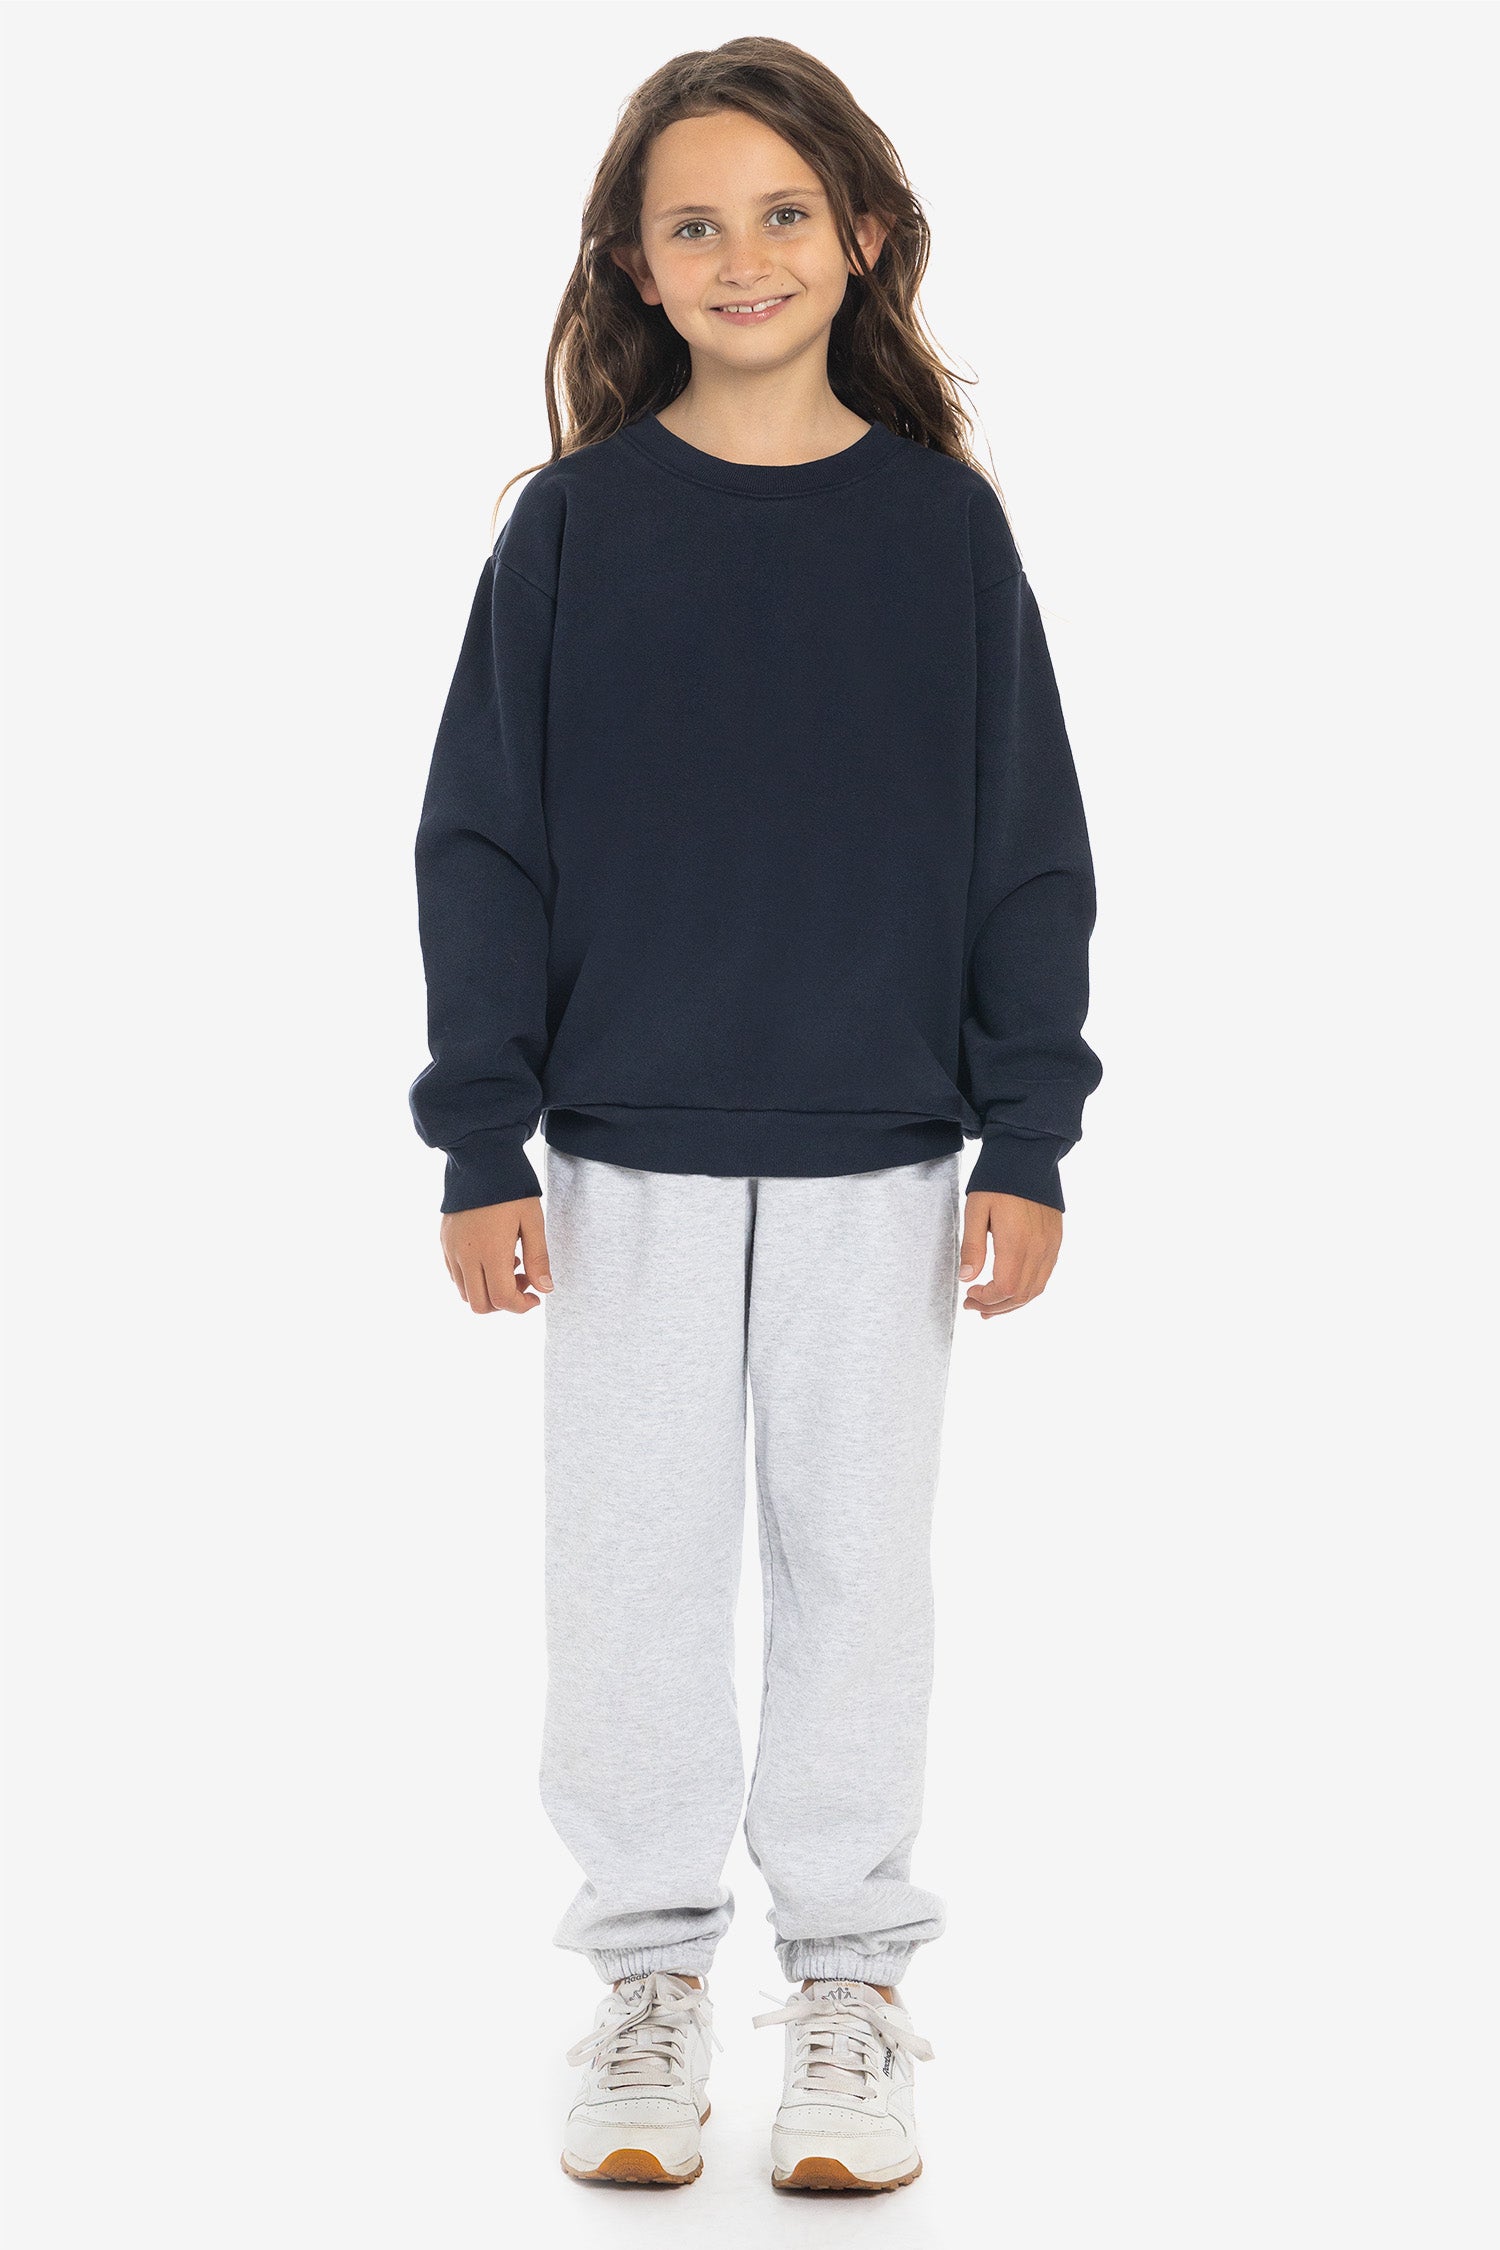 HF107GD - Kids Apparel Angeles – Sweatshirt Crew Fleece Los Heavy Dye Garment